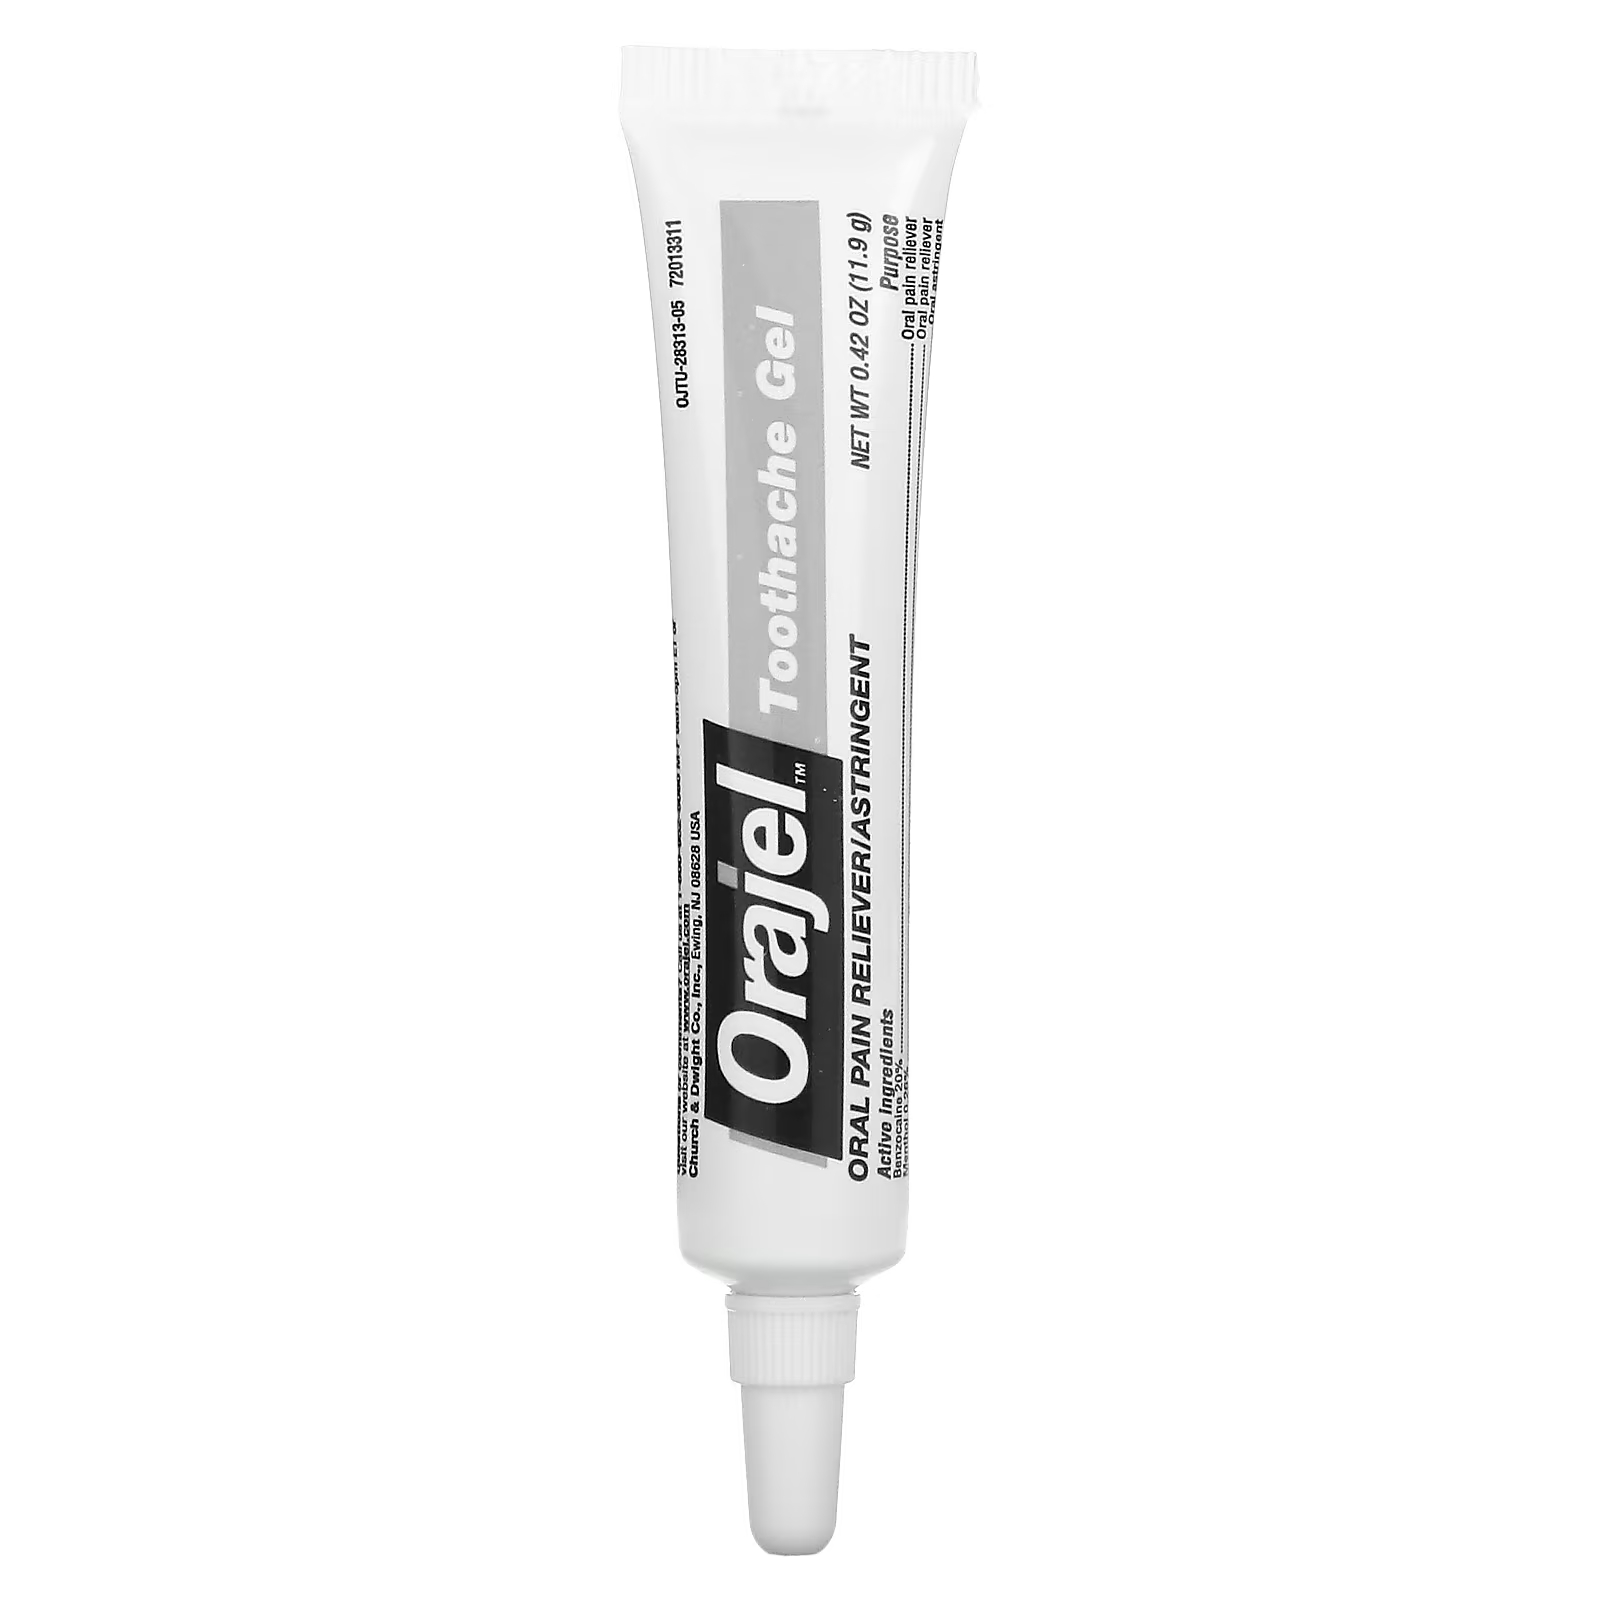 Гель обезболивающий Orajel 3x для лечения зубной боли и десен terrasil средство для облегчения язвы и боли при диабете 44 г